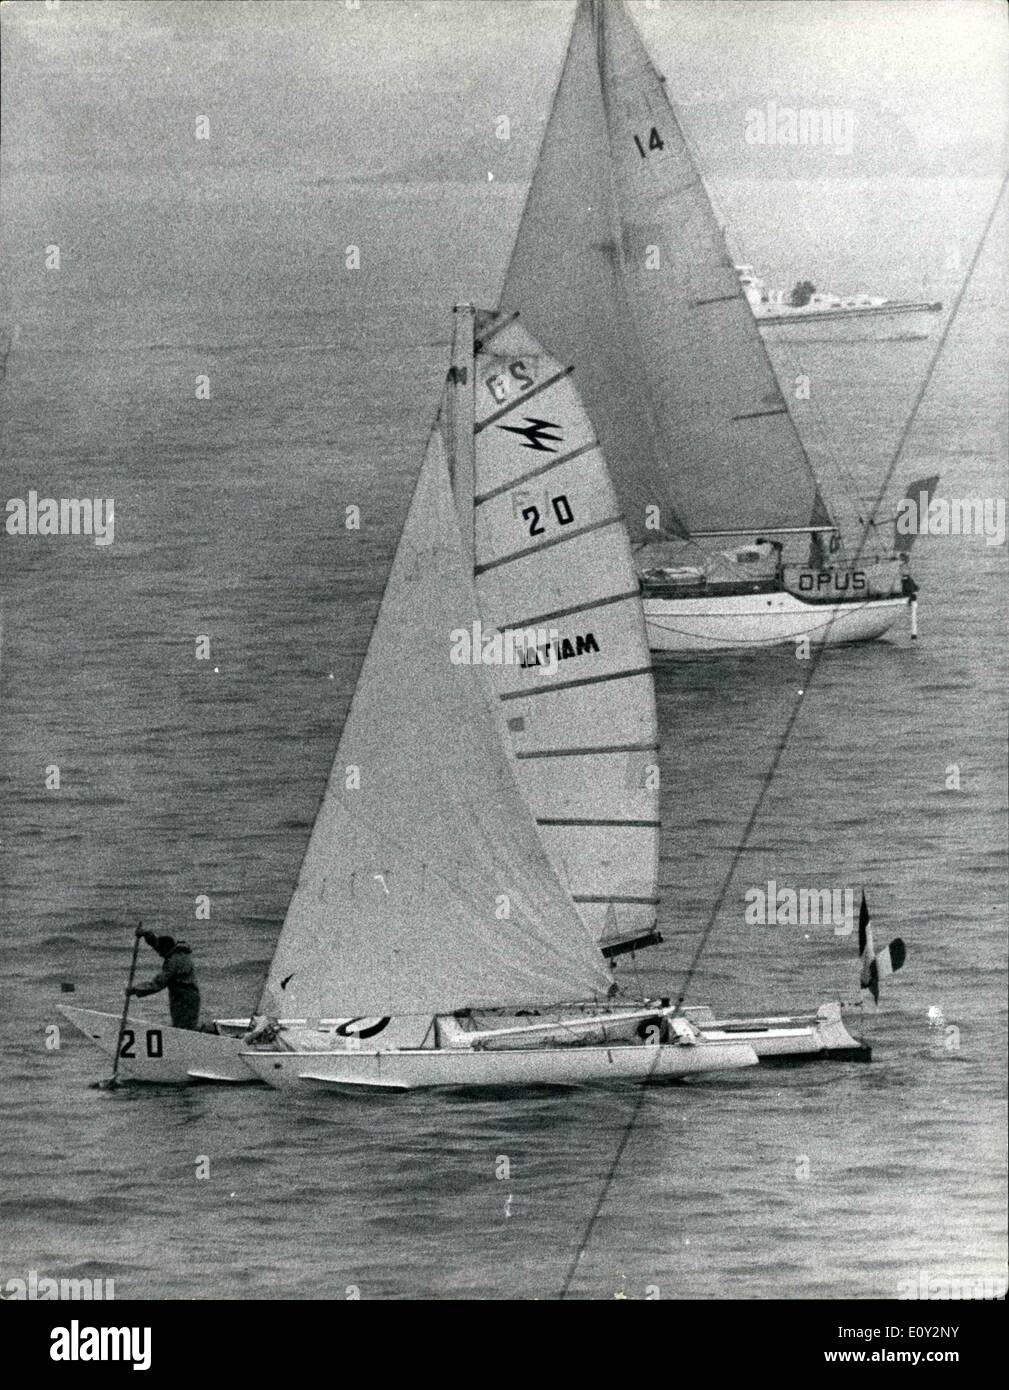 Giugno 06, 1968 - l'inizio della sola mano Yacht transatlantico gara da Plymouth. 35 Yachts esposte da Plymouth ieri su 3.000-miglio da sola gara attraverso l'atlantico a Newport, Rhode Island. La gara è iniziata quasi in calma piatta e pioggia battente. La foto mostra Commdt. B. Waquet ( Francia ) cerca di ottenere il suo Sloop ( Tri ) ''Tamoure'' lo spostamento mediante un 'sweep' subito dopo lo start. In fondo è il sloop ''Opus'', ( U.K.) con equipaggio bank manager B.T.A. Cooke. Foto Stock